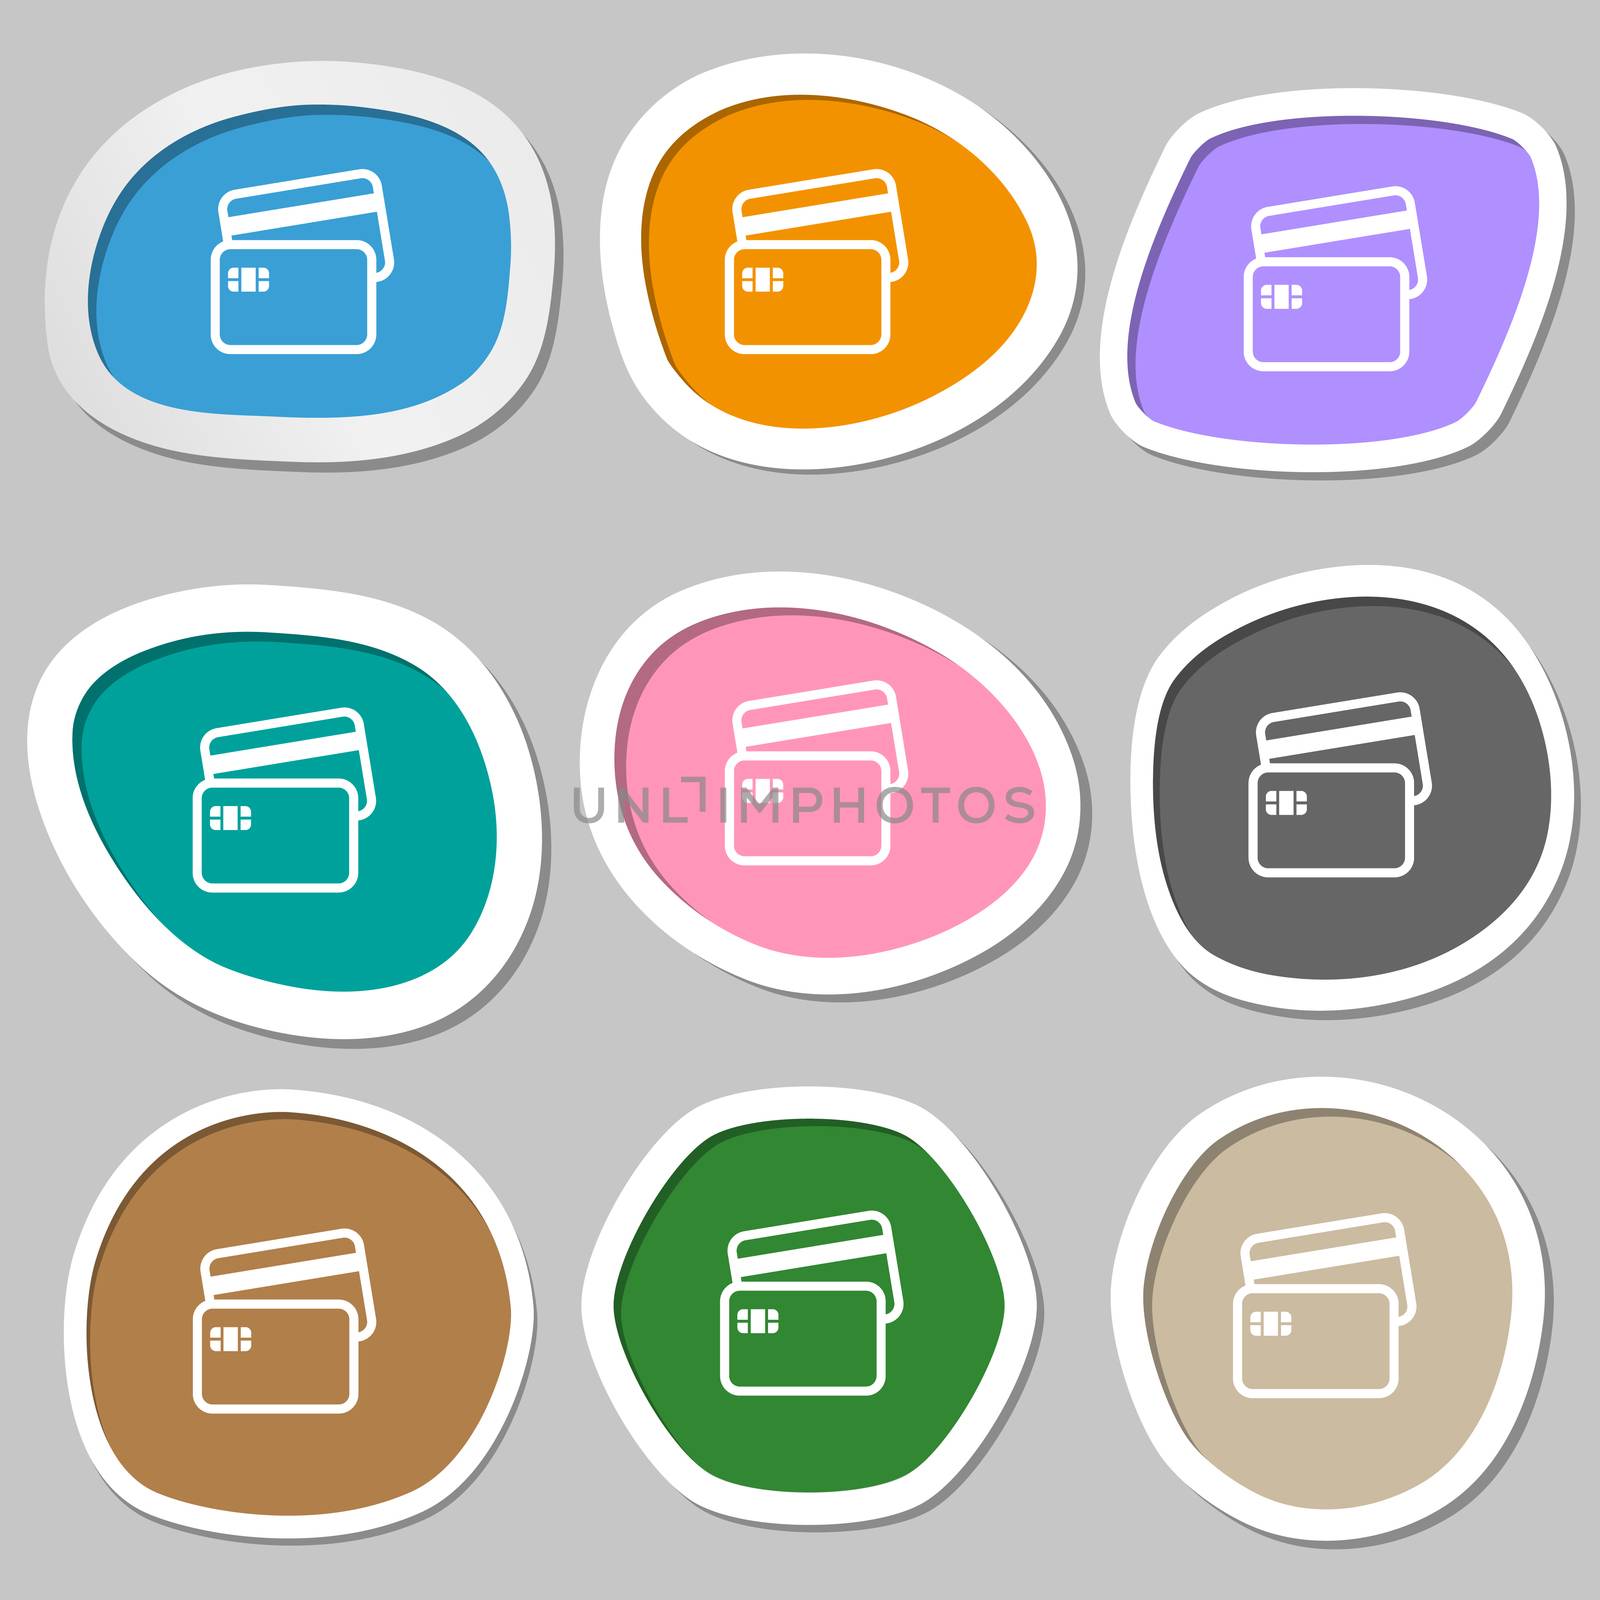 Credit card icon symbols. Multicolored paper stickers. illustration